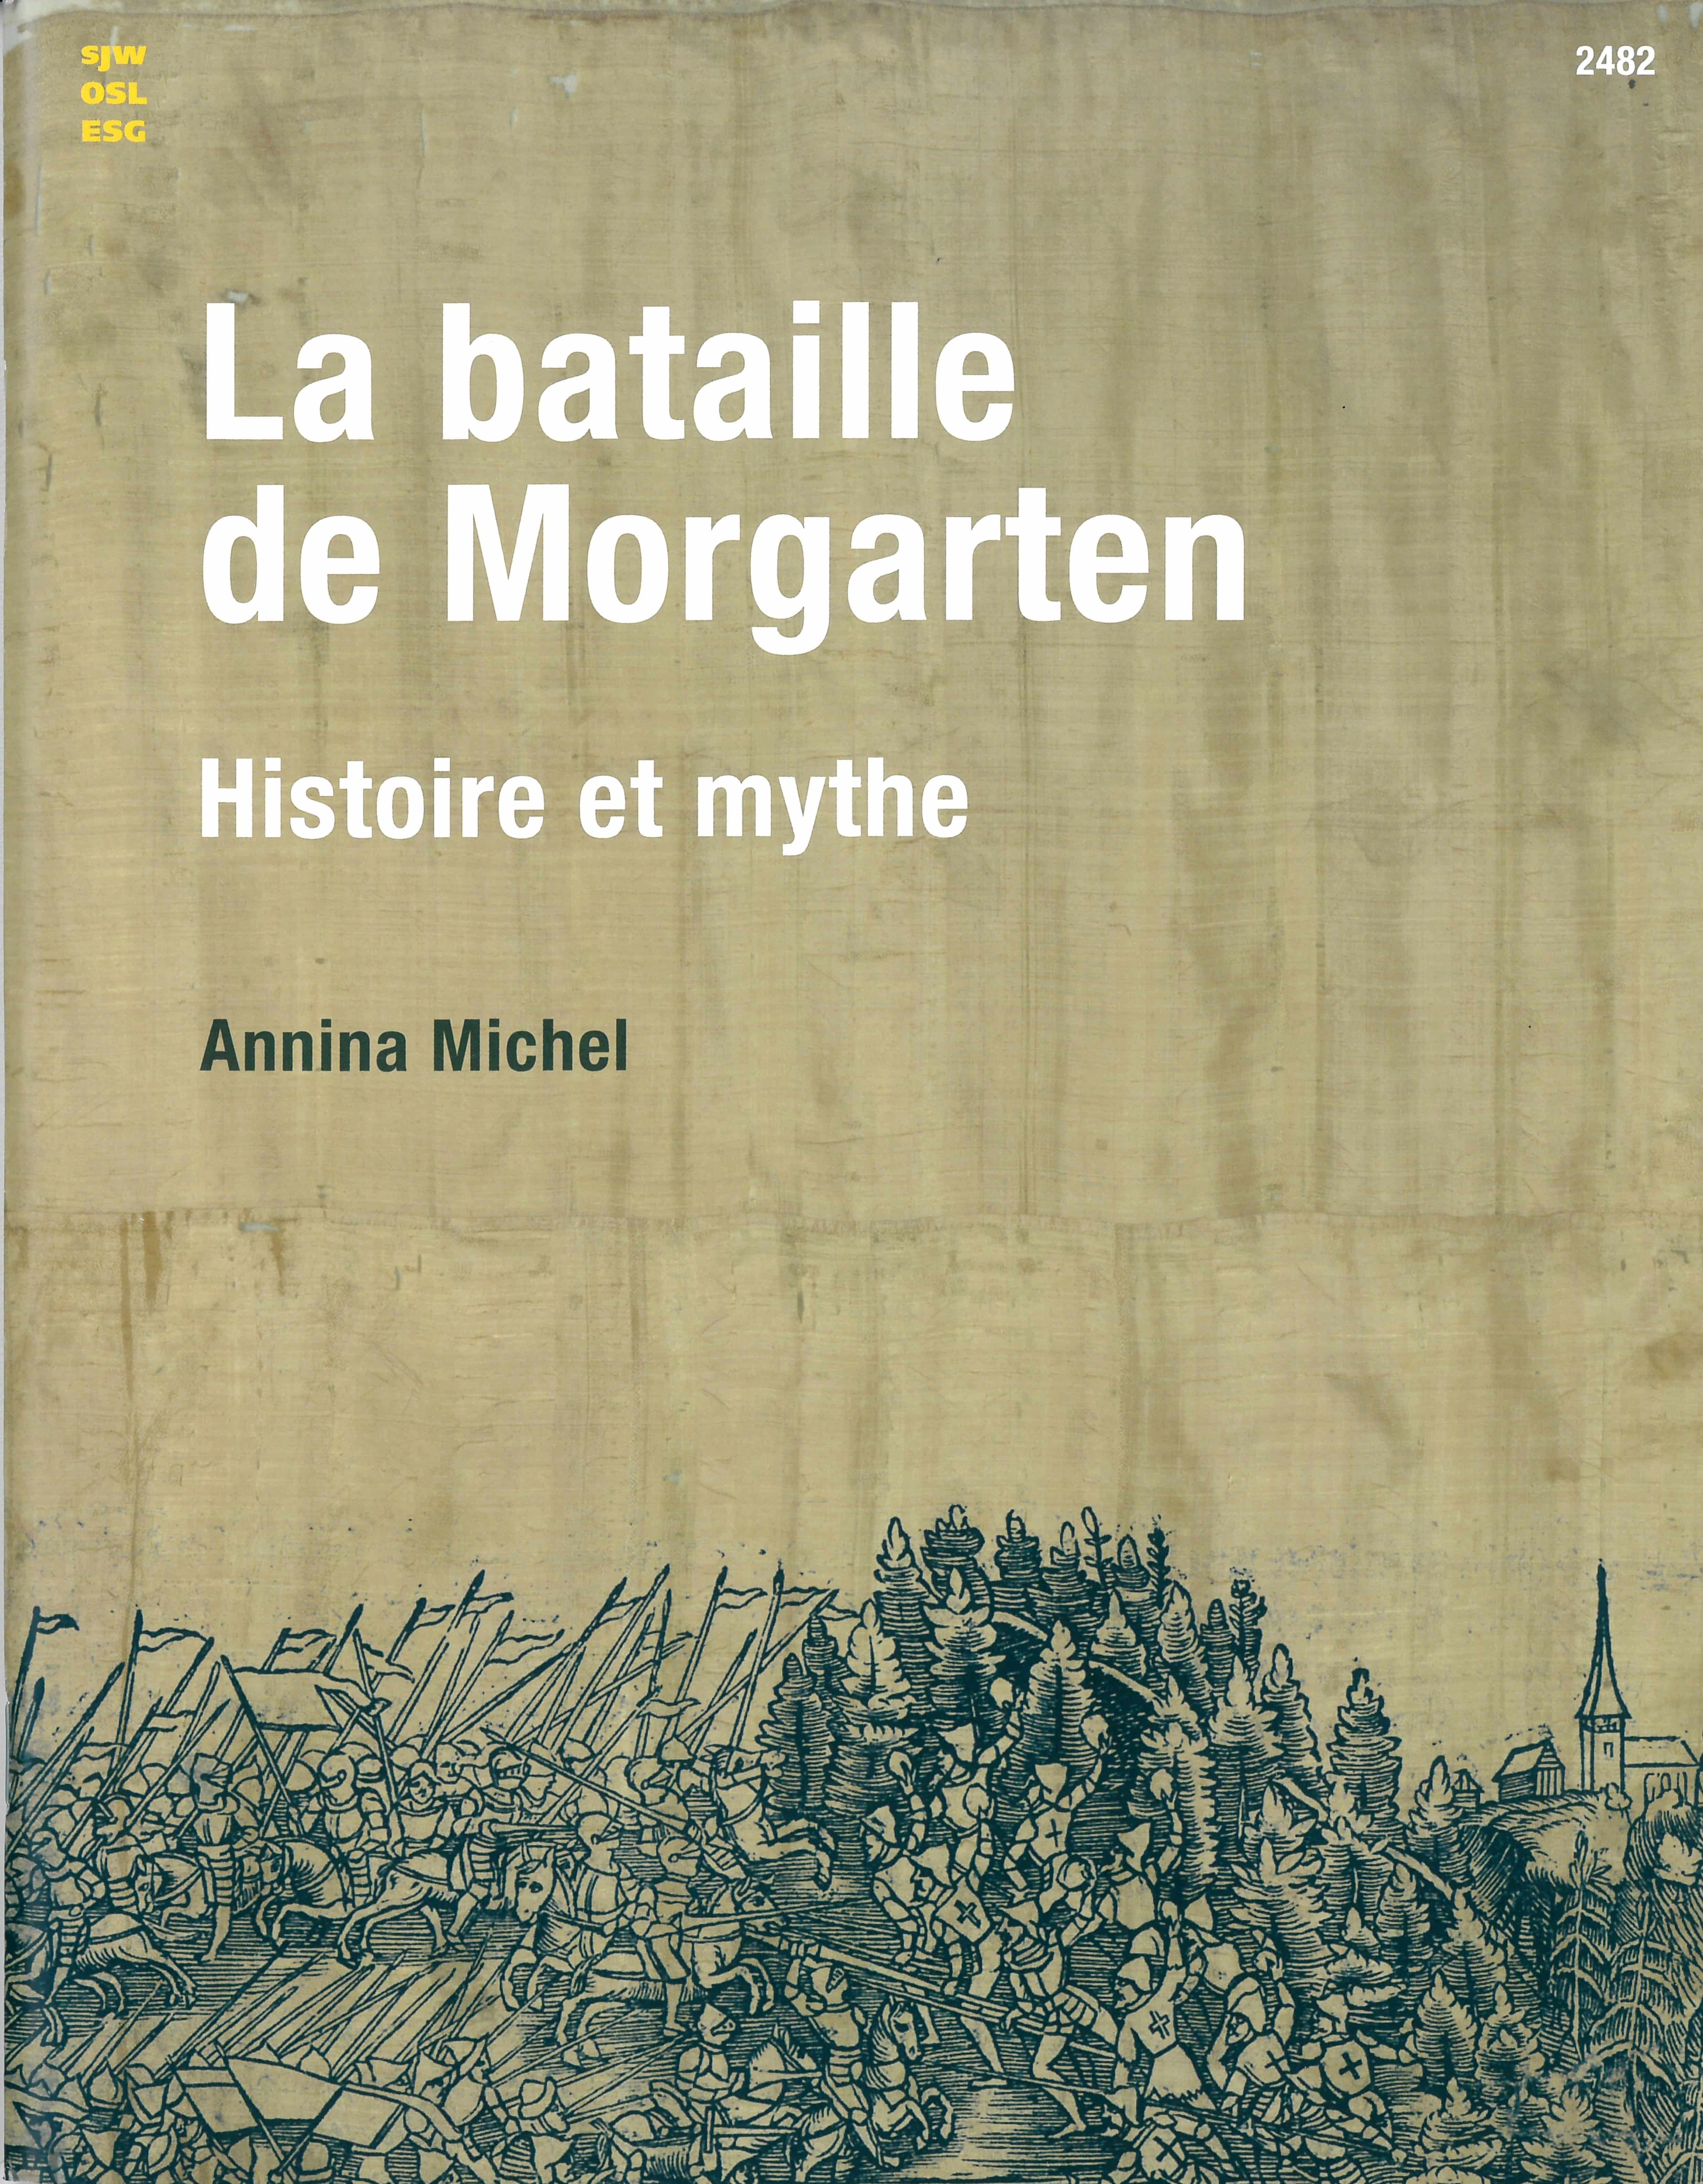 La bataille de Morgarten – Histoire et mythe